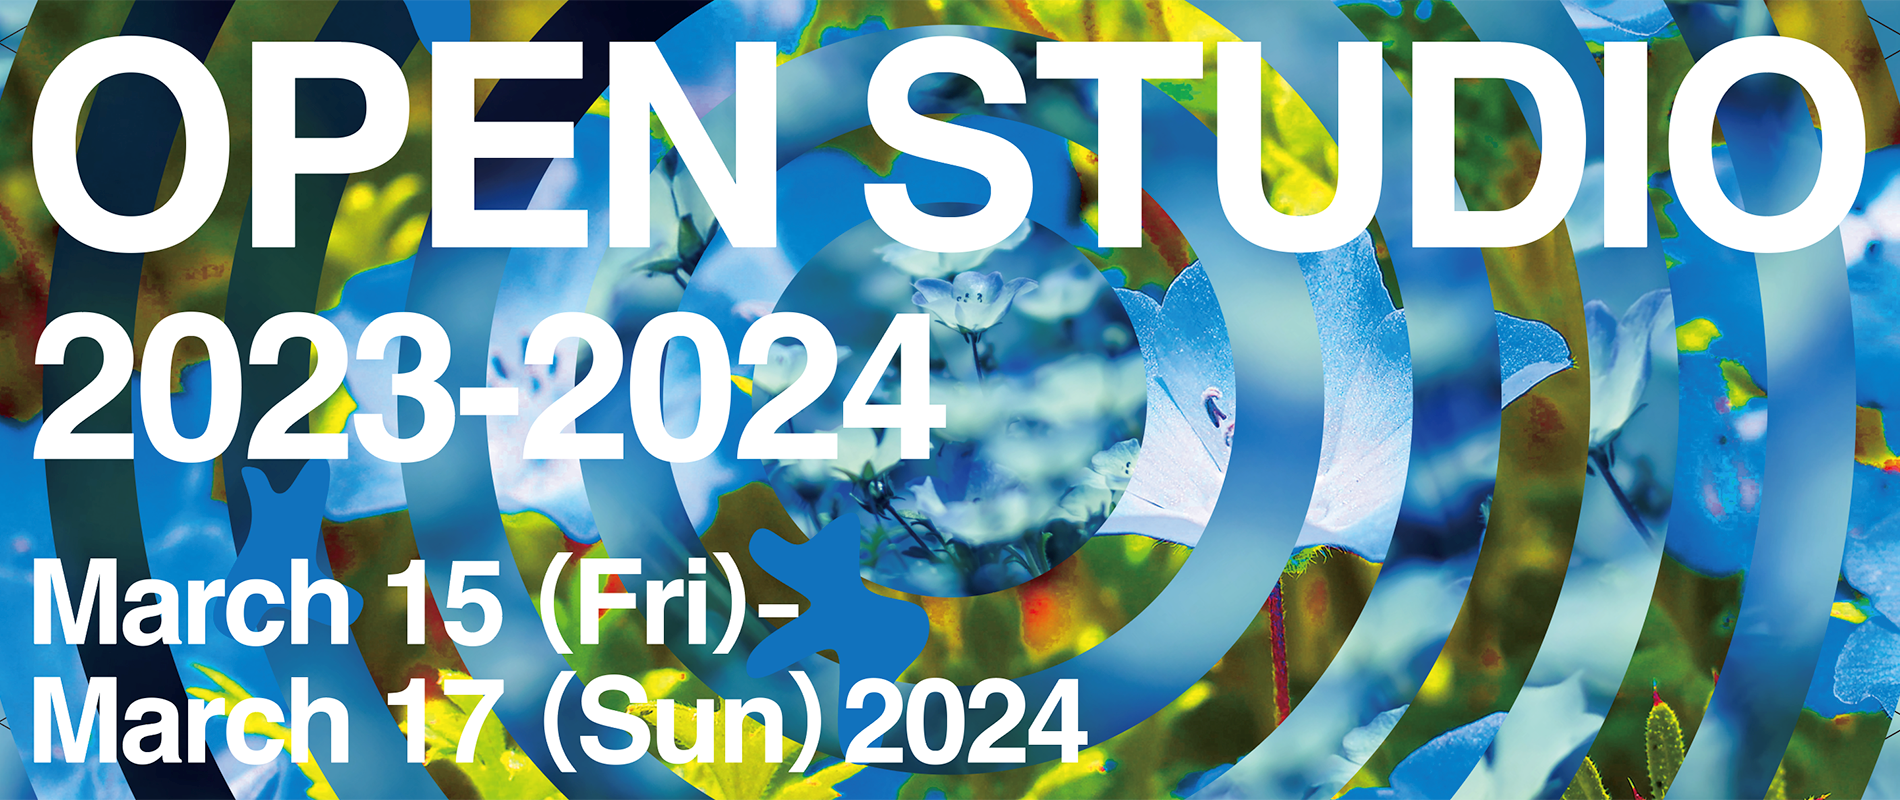 OPEN STUDIO 2023-2024/ March